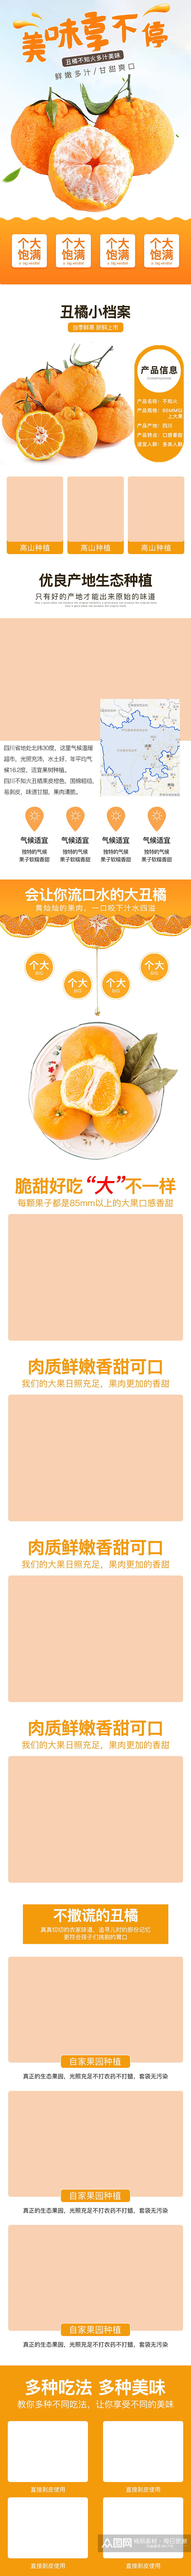 四川丑橘详情页素材产品描述页素材